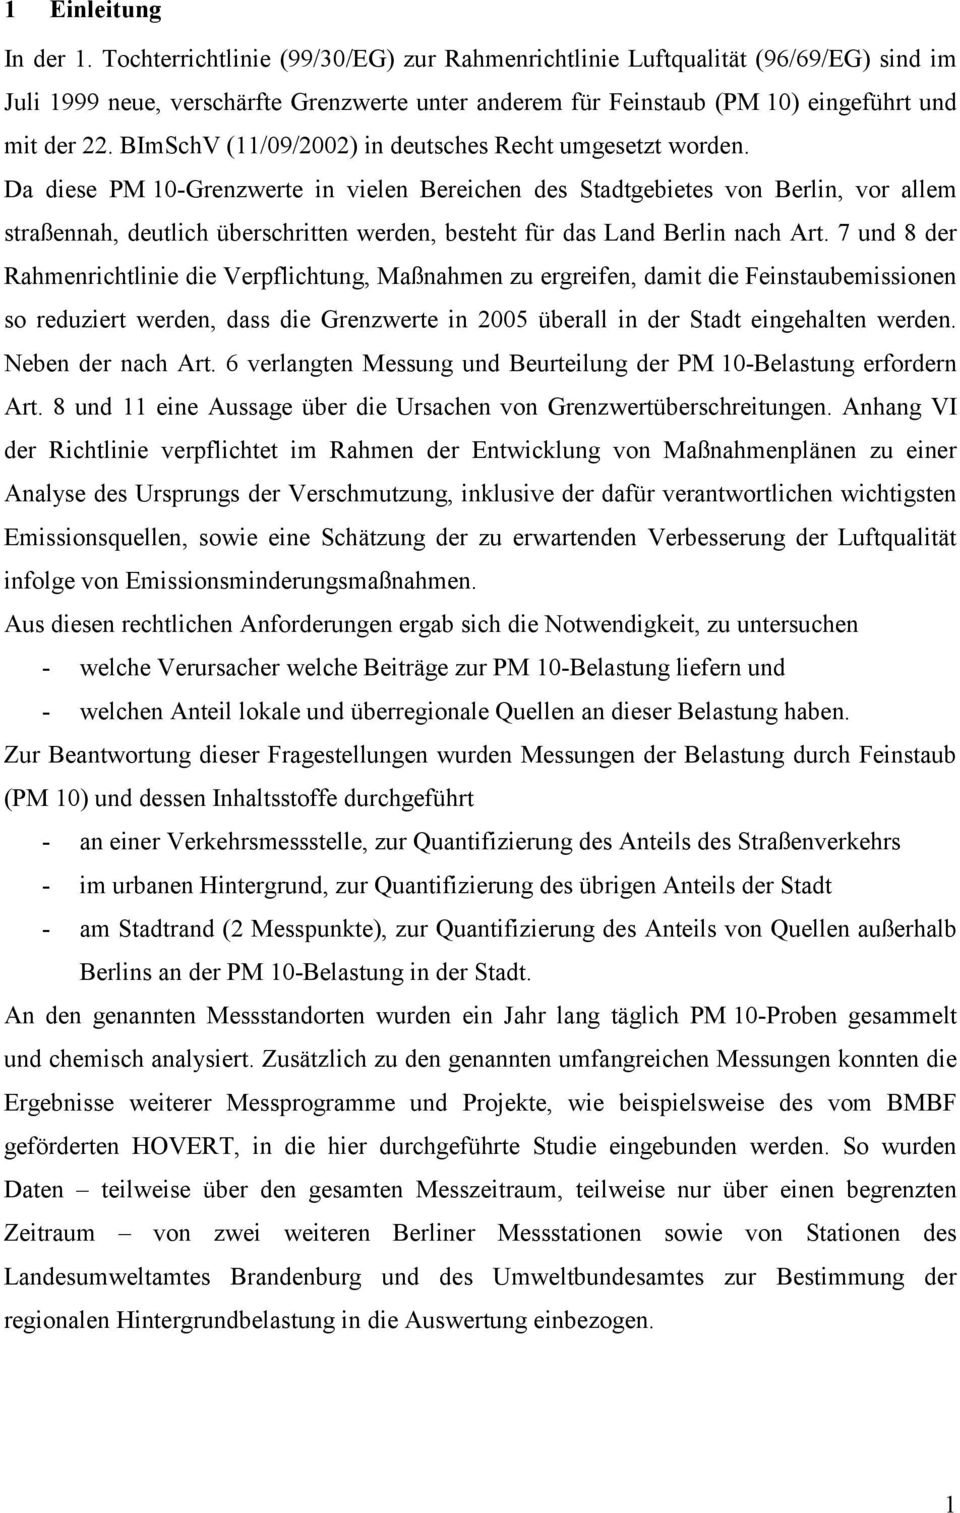 BImSchV (11/9/22) in deutsches Recht umgesetzt worden.